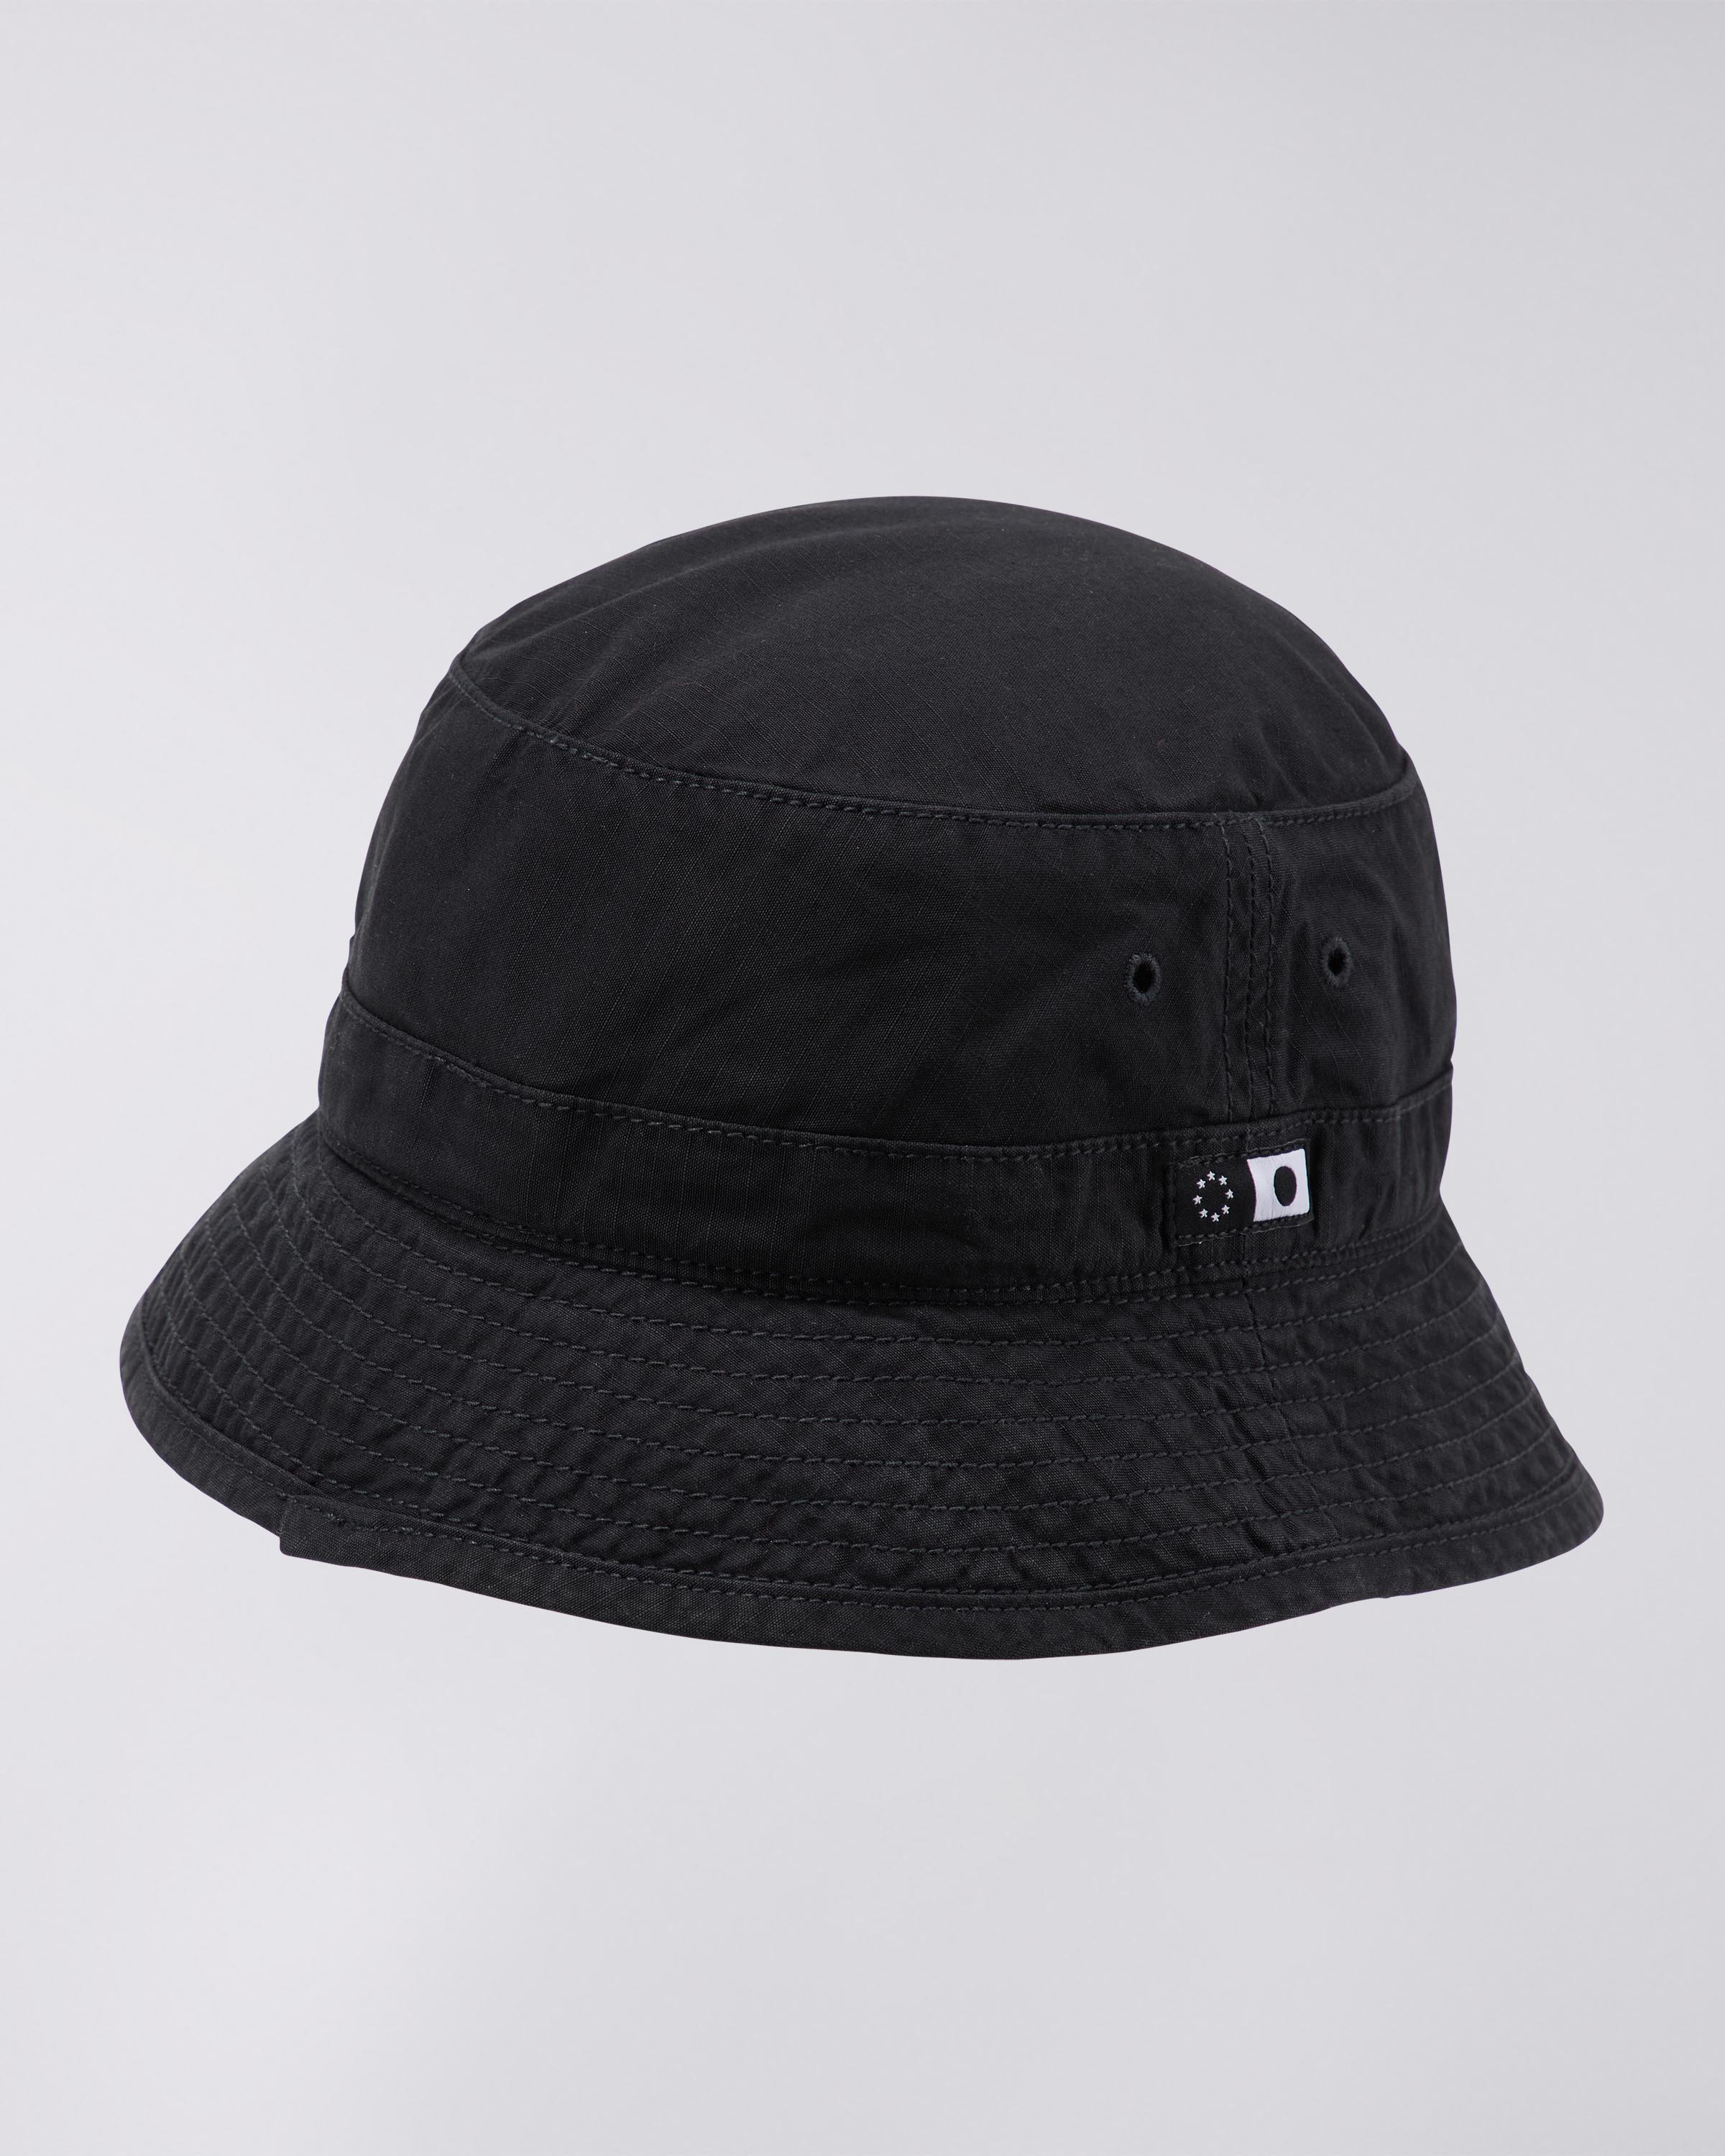 EDWIN Bucket Hat Black garment dyed